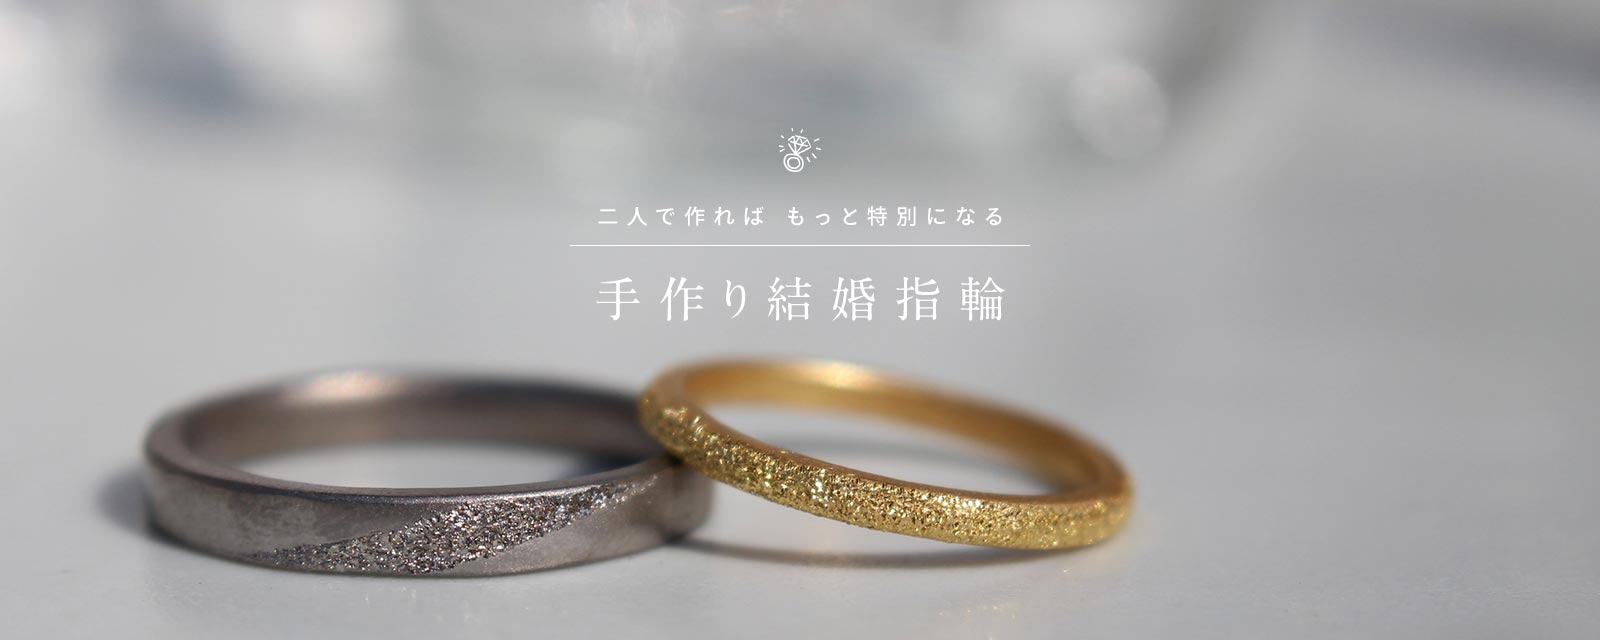 福岡 結婚指輪婚約指輪を手作りできるお店 手作り指輪のお店m Studio 指輪のハンドメイド オーダーメイド Diy